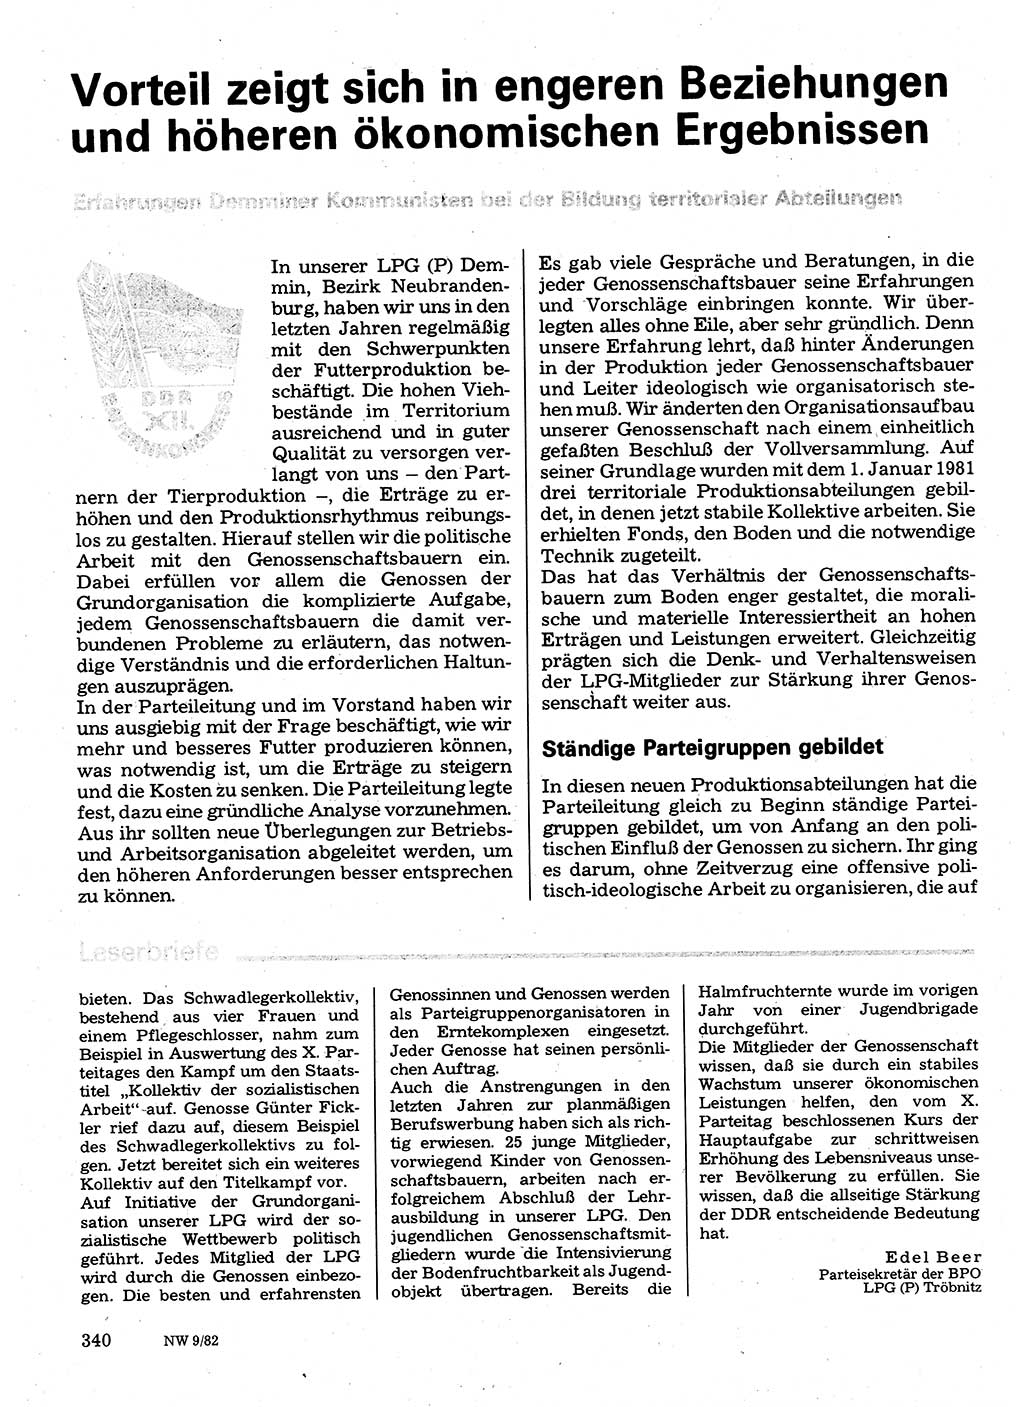 Neuer Weg (NW), Organ des Zentralkomitees (ZK) der SED (Sozialistische Einheitspartei Deutschlands) für Fragen des Parteilebens, 37. Jahrgang [Deutsche Demokratische Republik (DDR)] 1982, Seite 340 (NW ZK SED DDR 1982, S. 340)